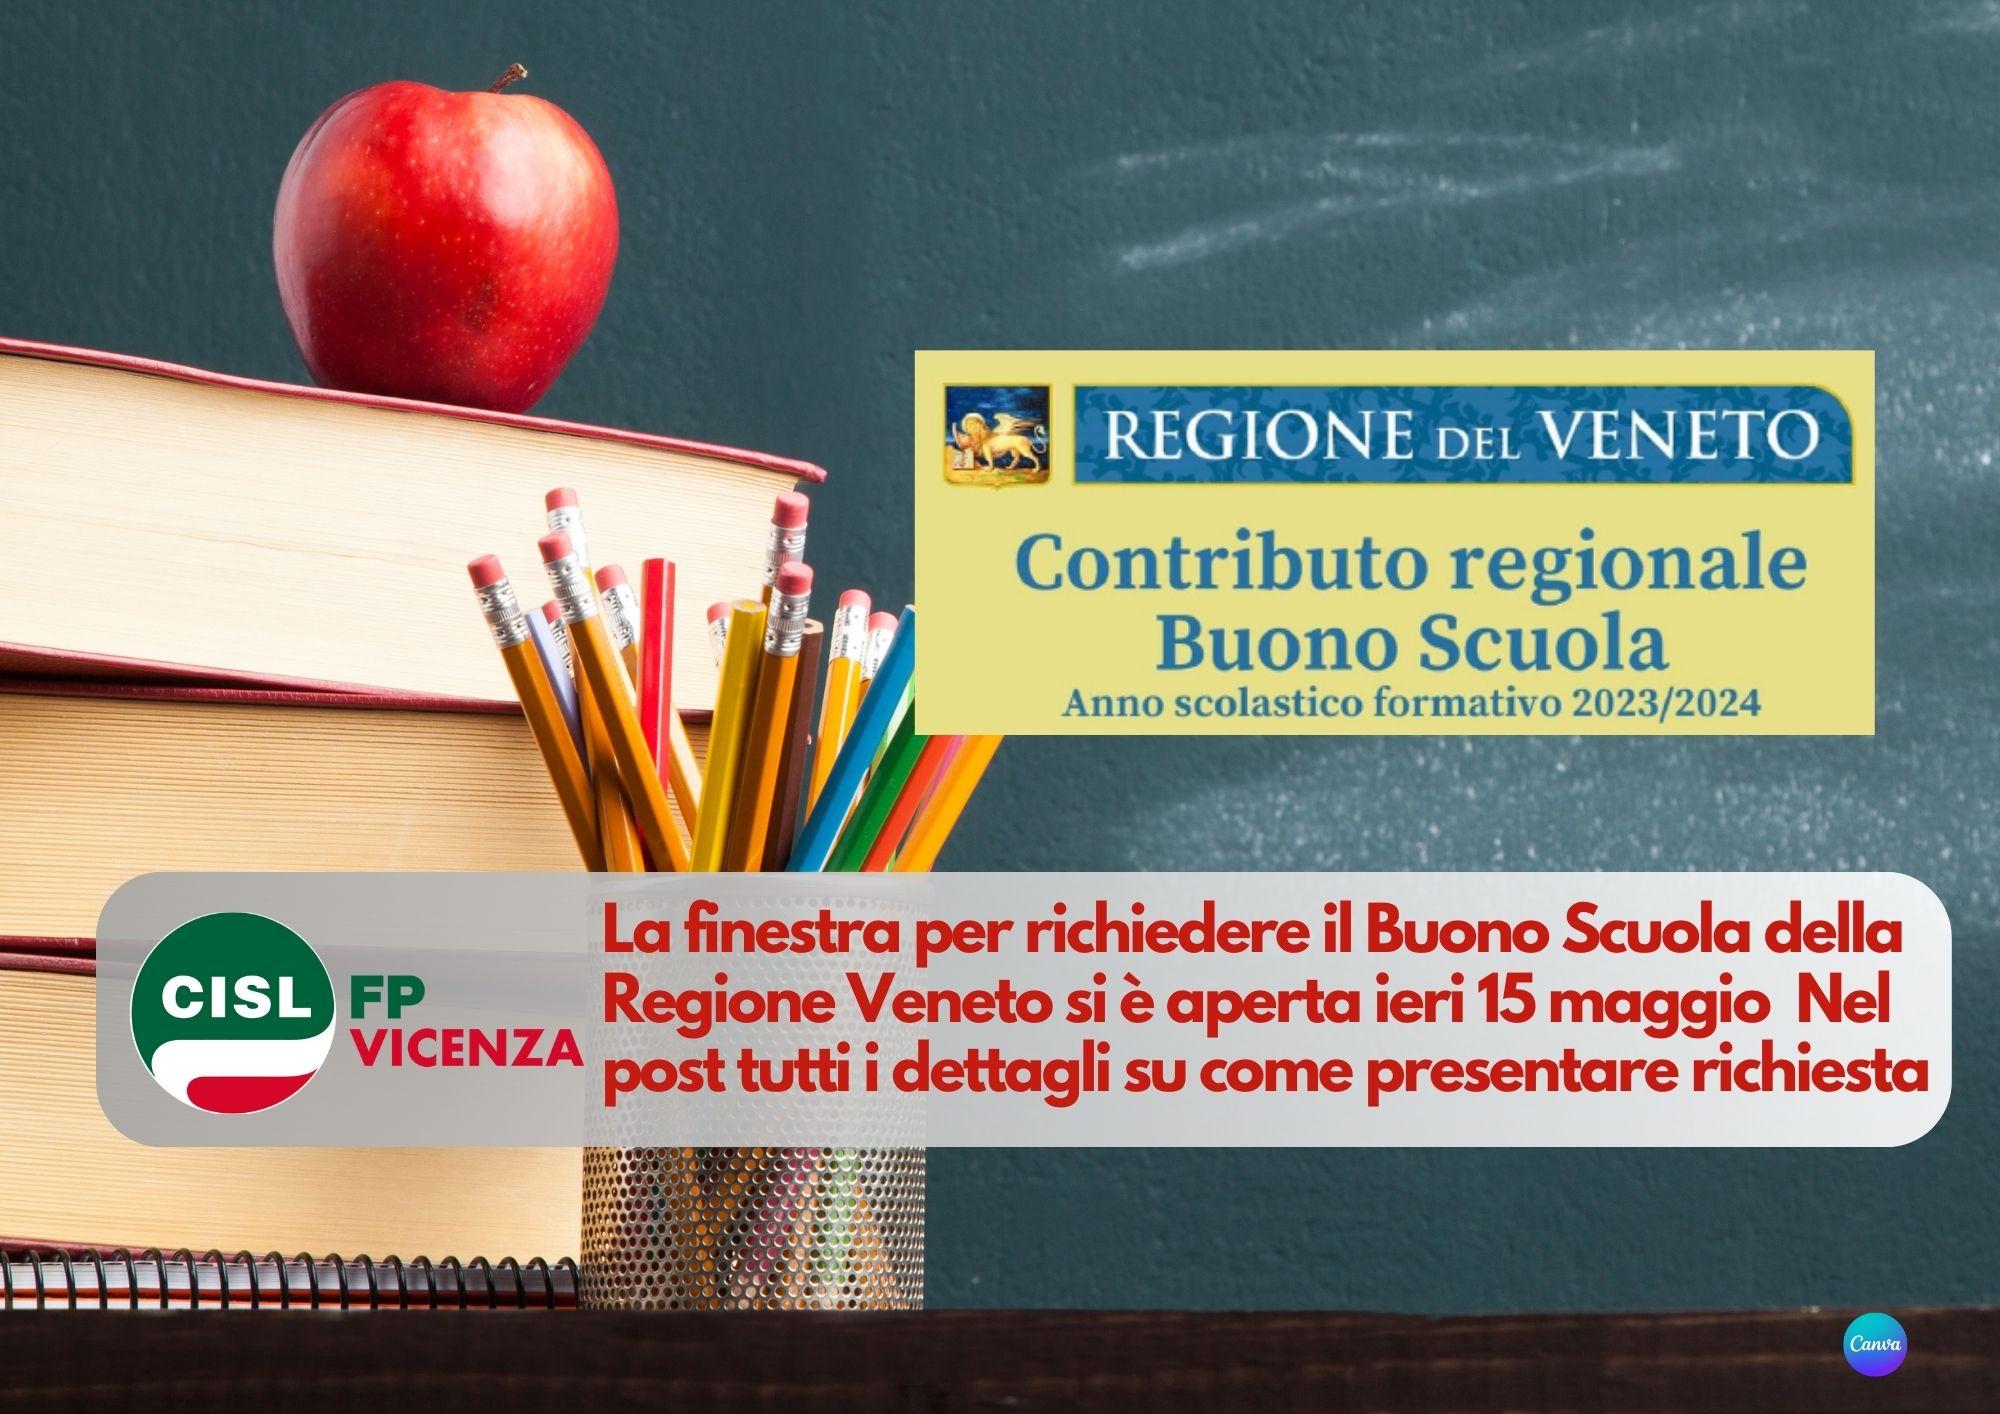 CISL FP Vicenza. Contributo regionale Veneto "Buono Scuola". Come e quando richiederlo